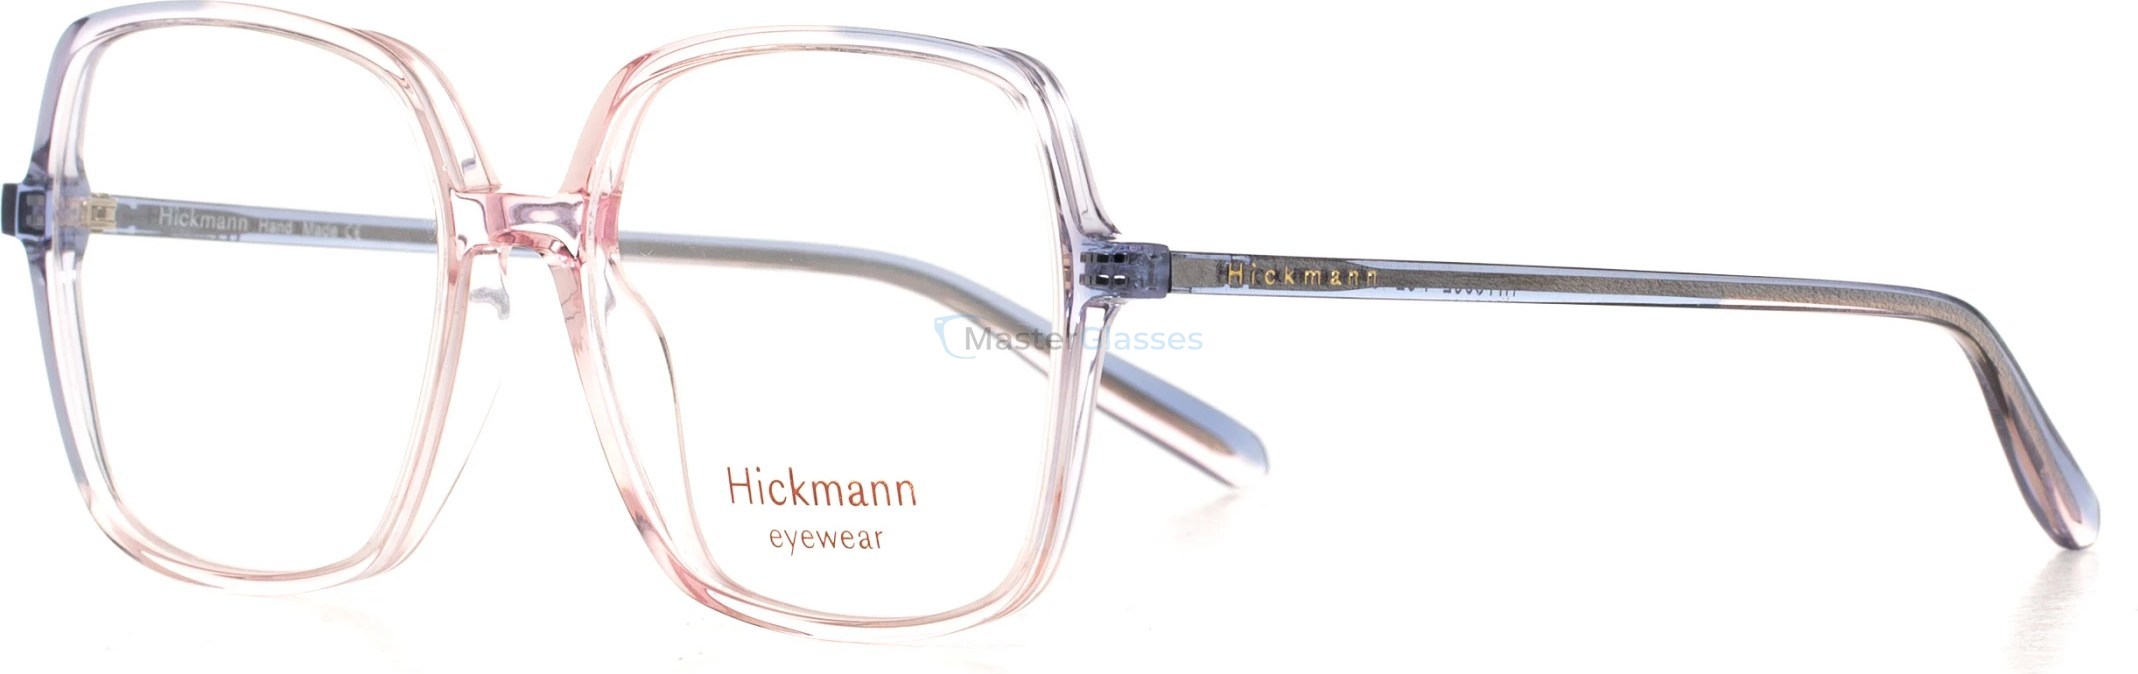  Hickmann HIY6002 P02